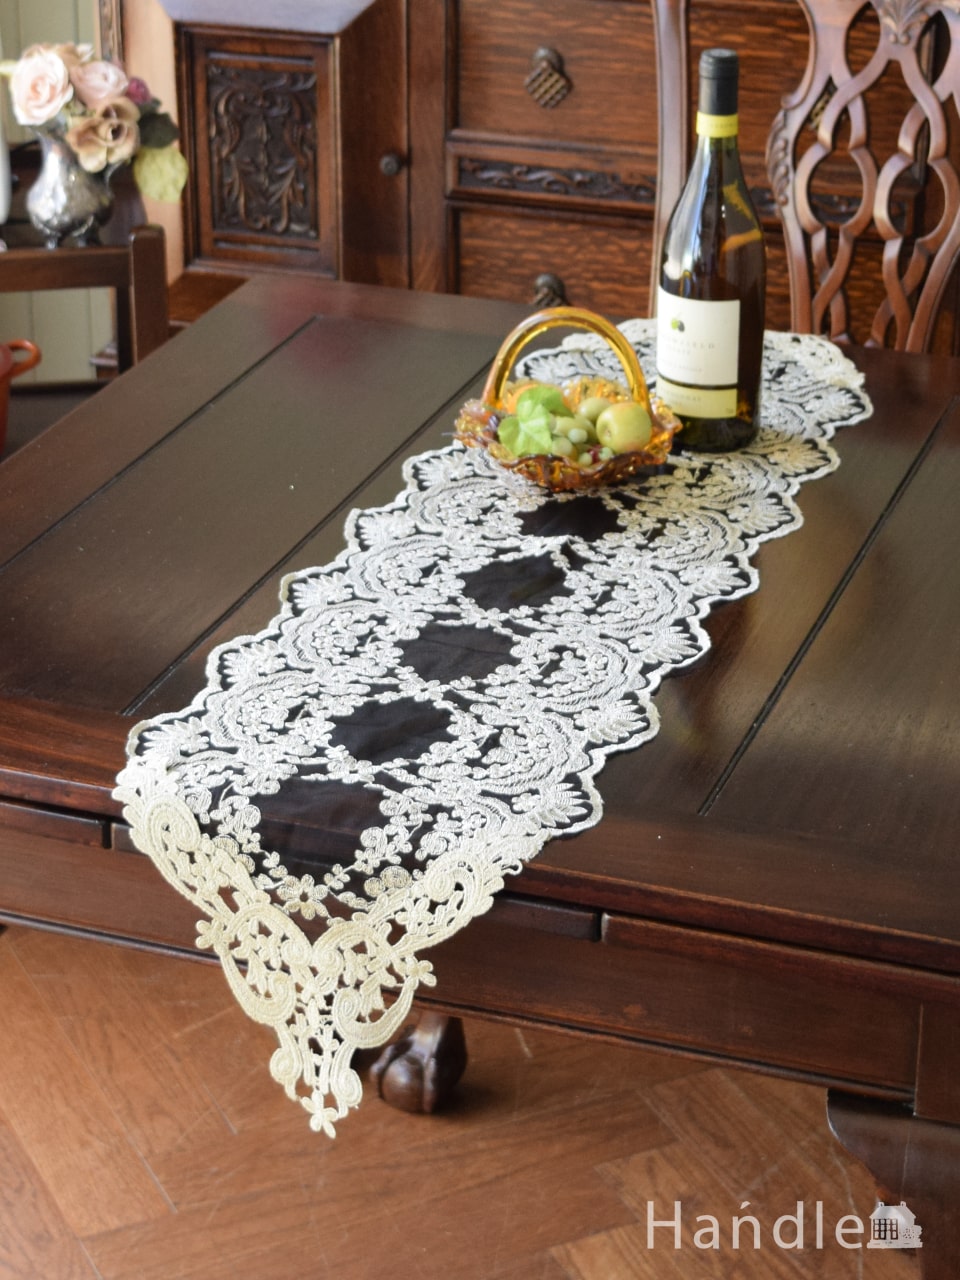 フレンチアンティーク調のテーブルランナー、華やかなお花の刺繍の